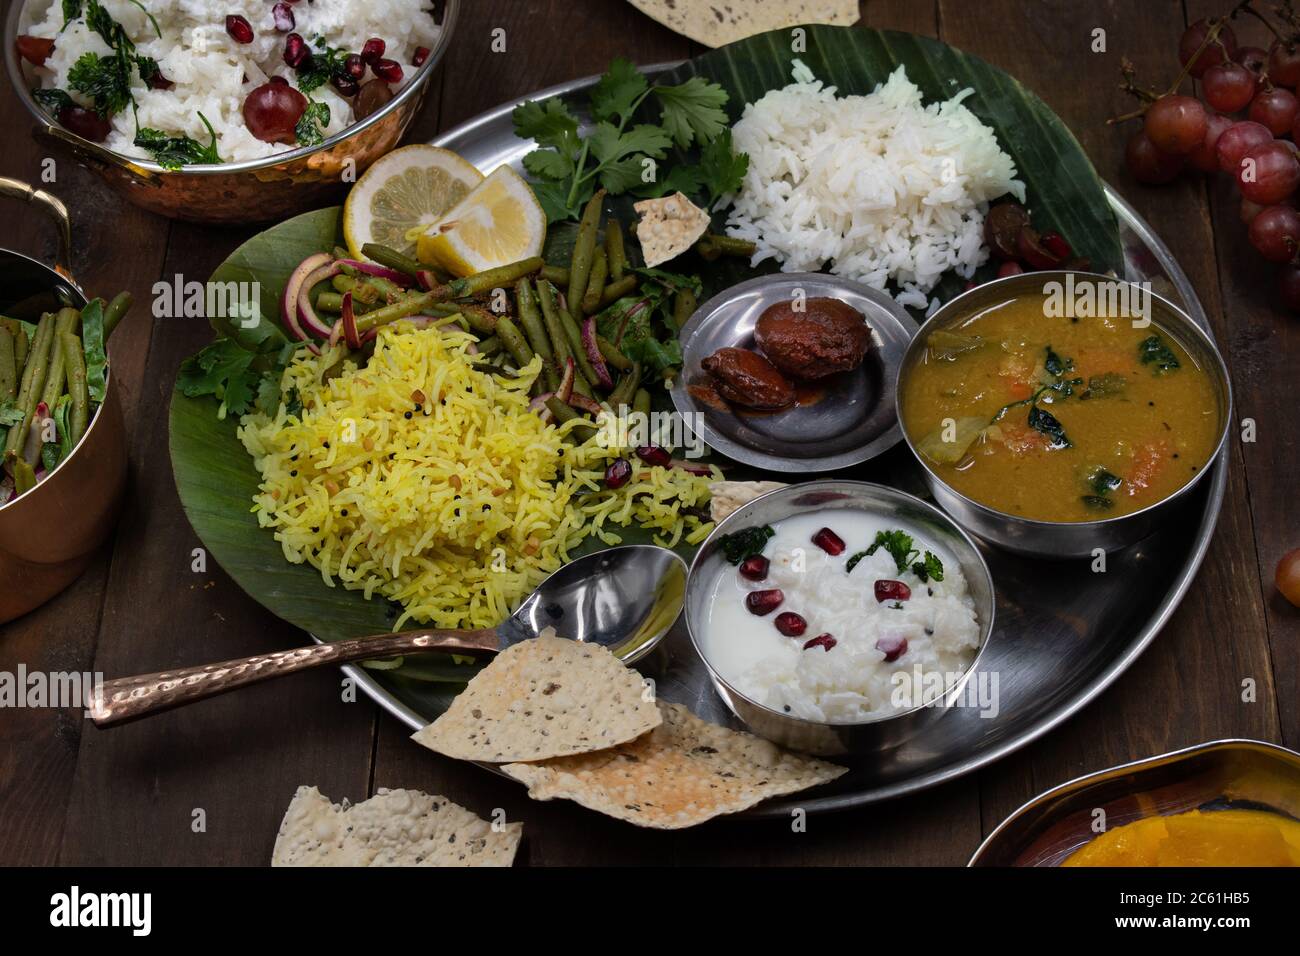 Plats végétariens traditionnels du sud de l'Inde servis sur un plateau sur une feuille de banane Banque D'Images